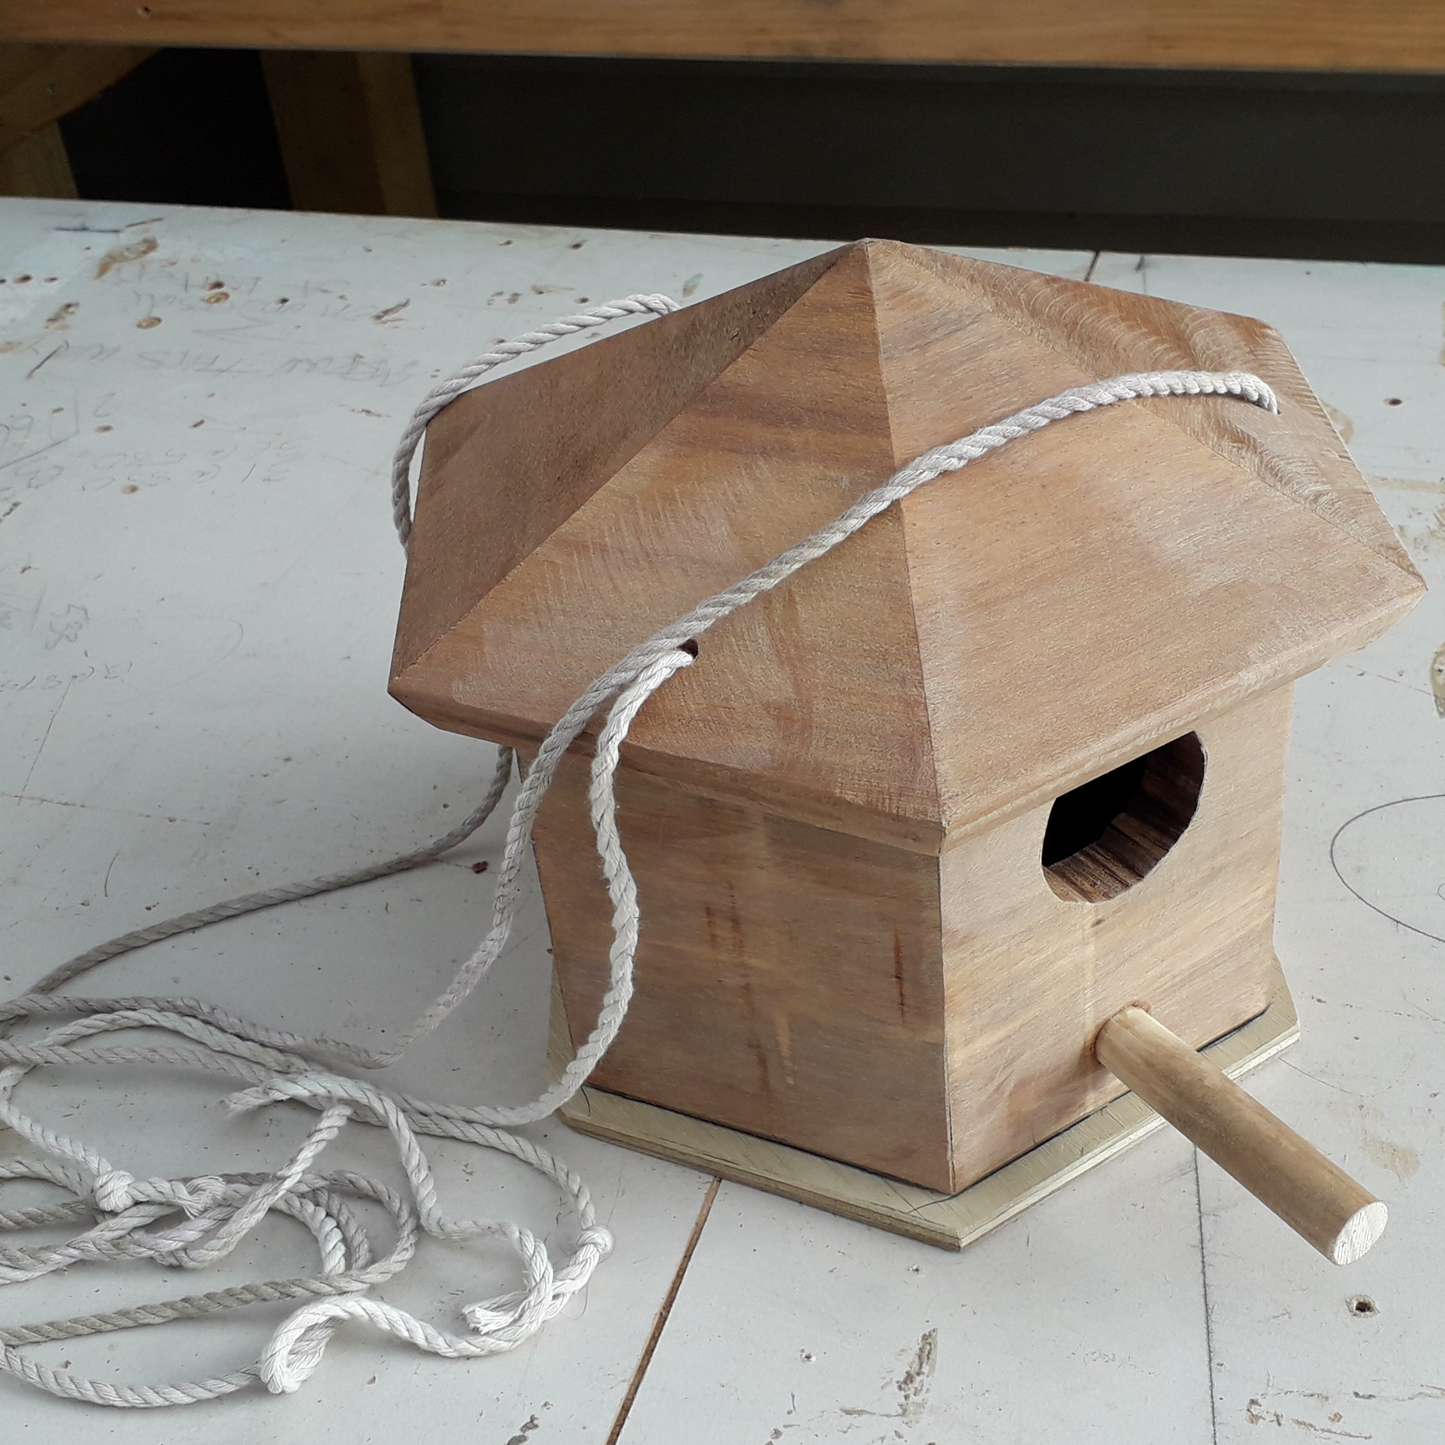 DIY plans to build a hexagonal birdhouse